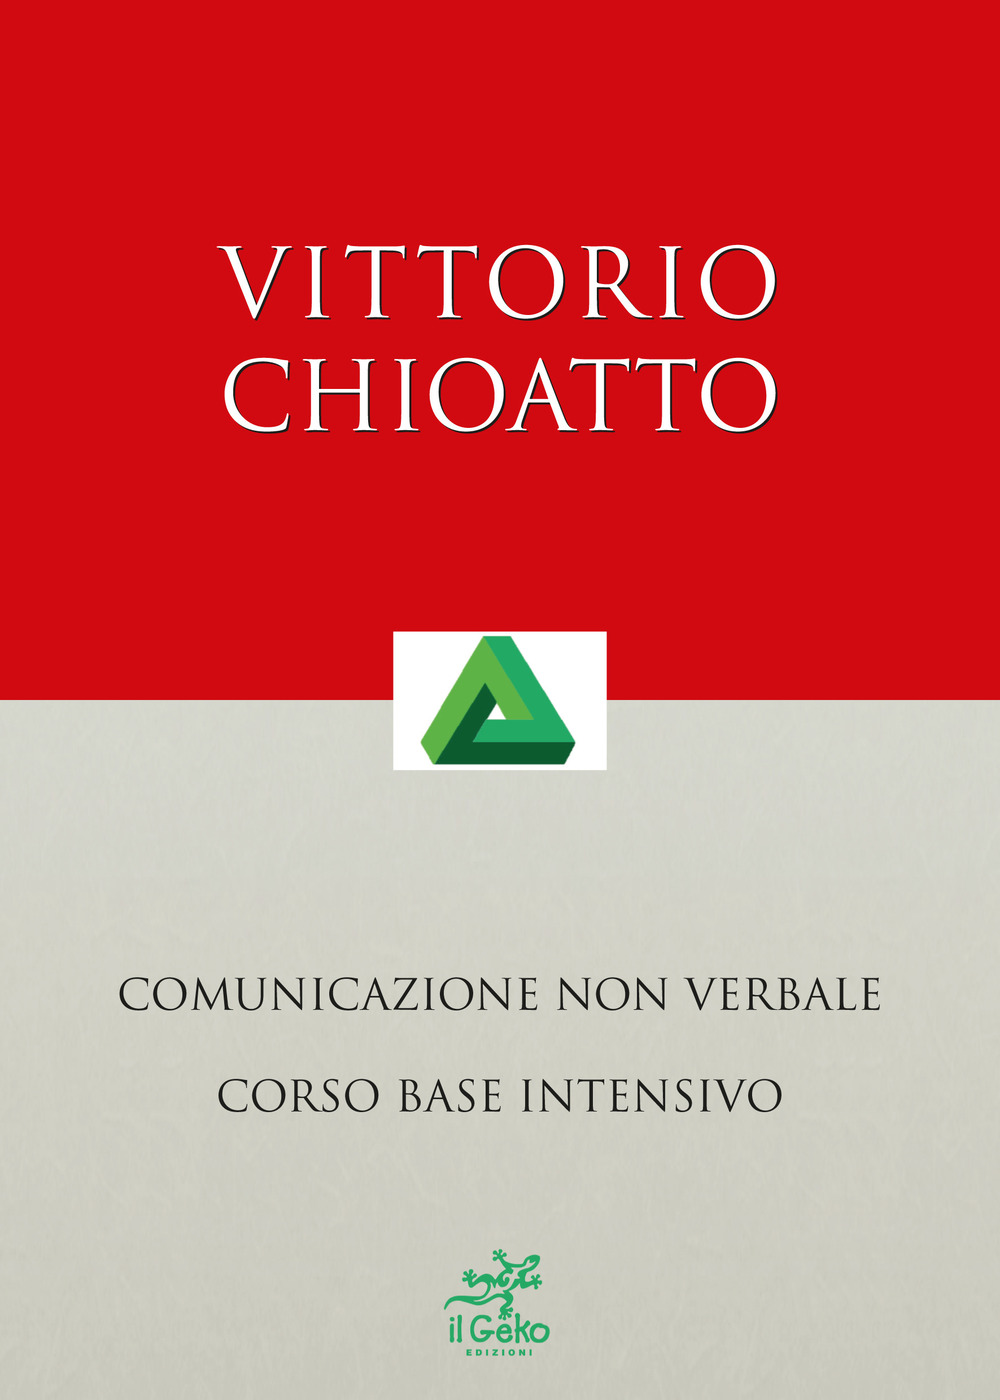 Vittorio Chioatto